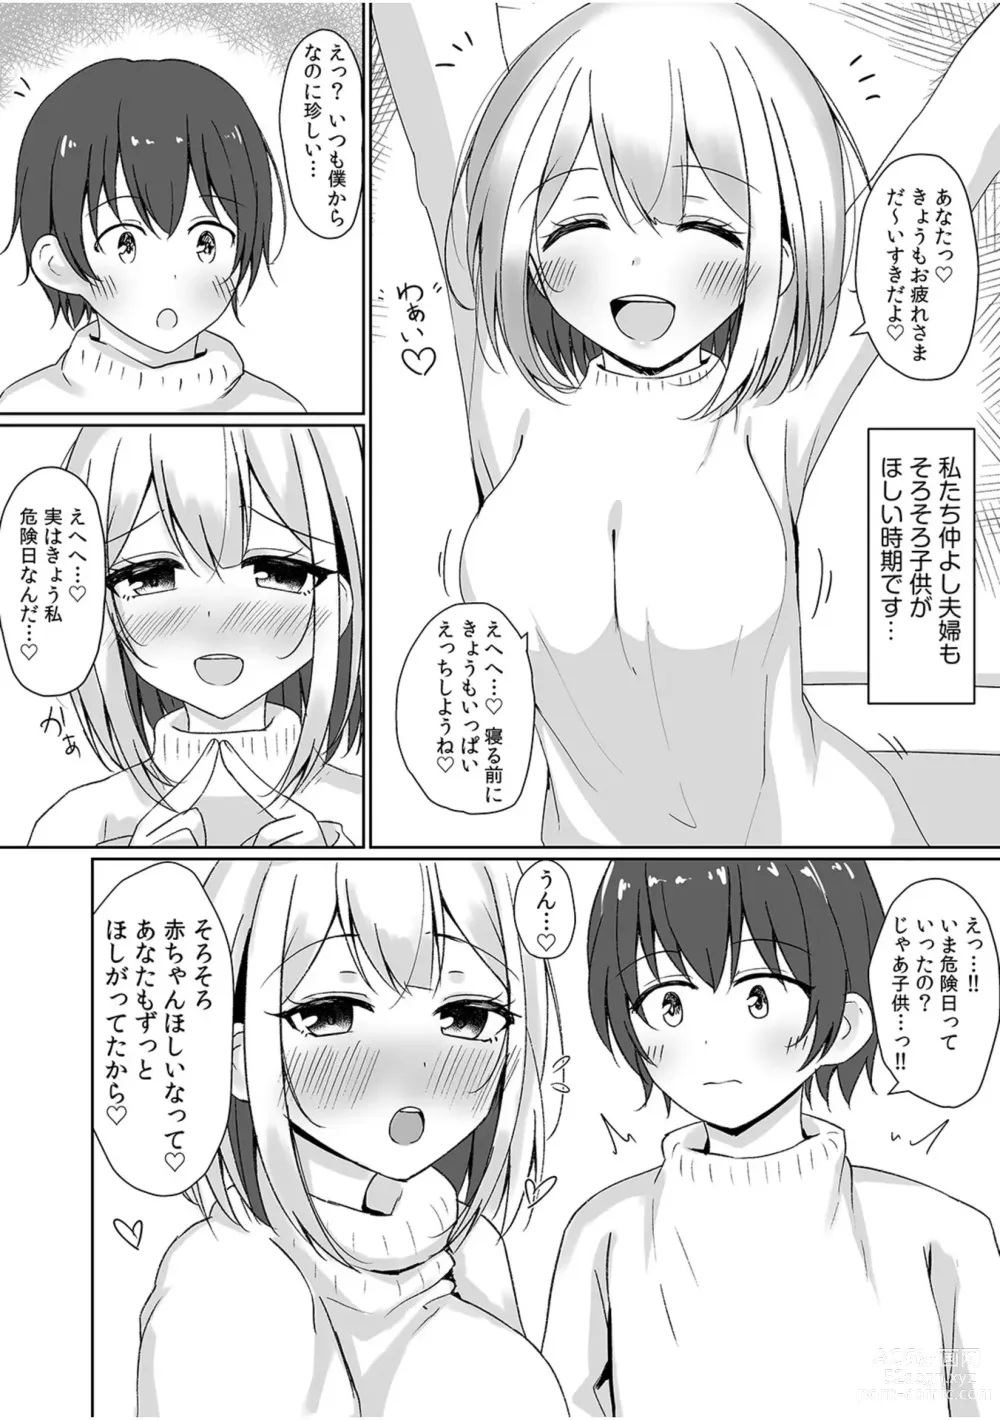 Page 73 of manga 「Zettai ni kimi o hanasanai」Aishi au 2-ri wa nando mo hageshiku…